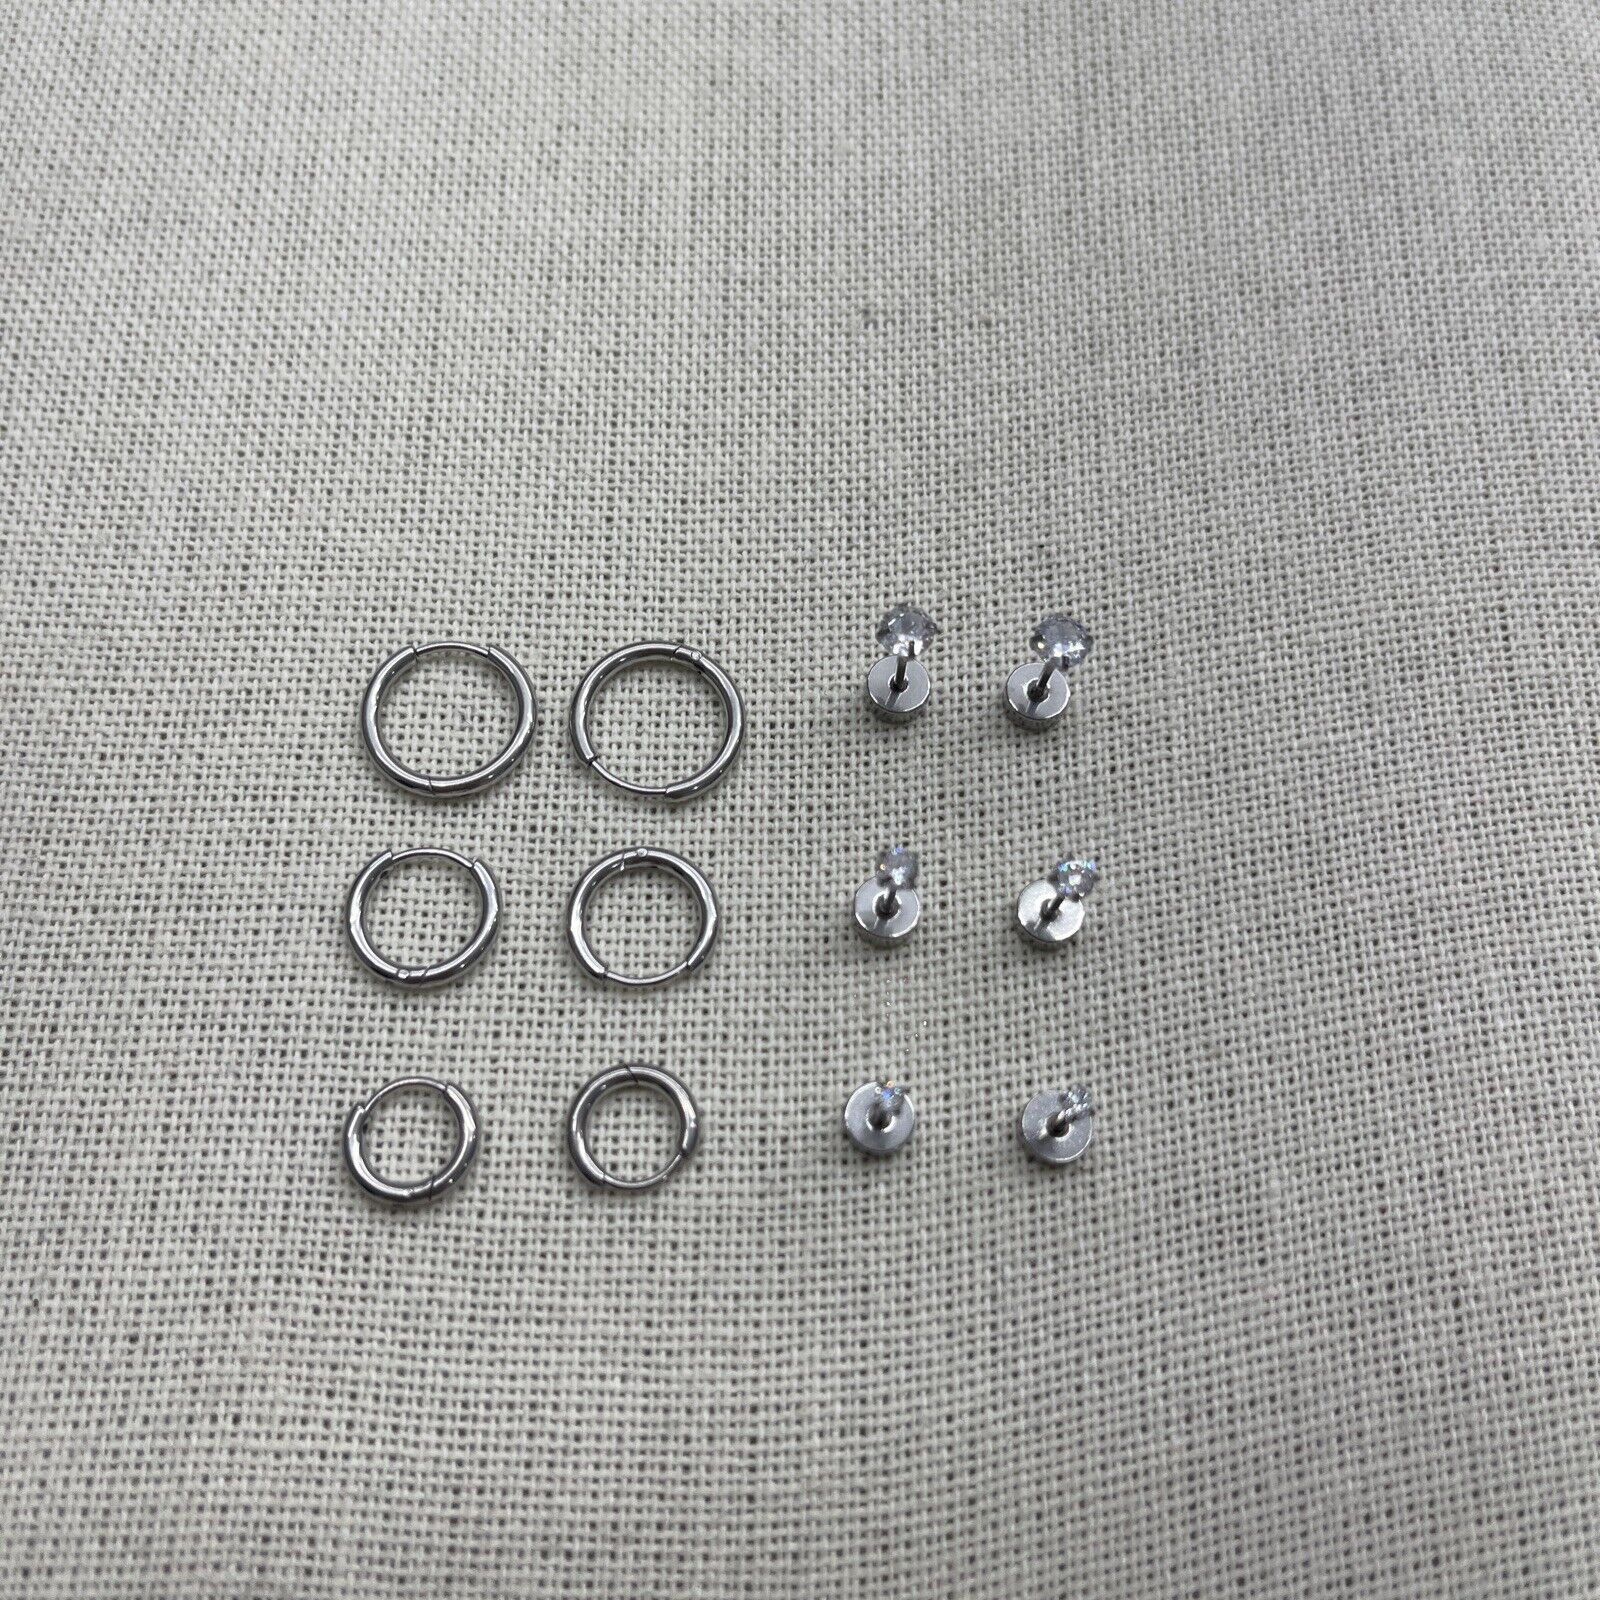 Sweetkiki 6 Pair Dainty Hoop And Stud Earrings Silver New